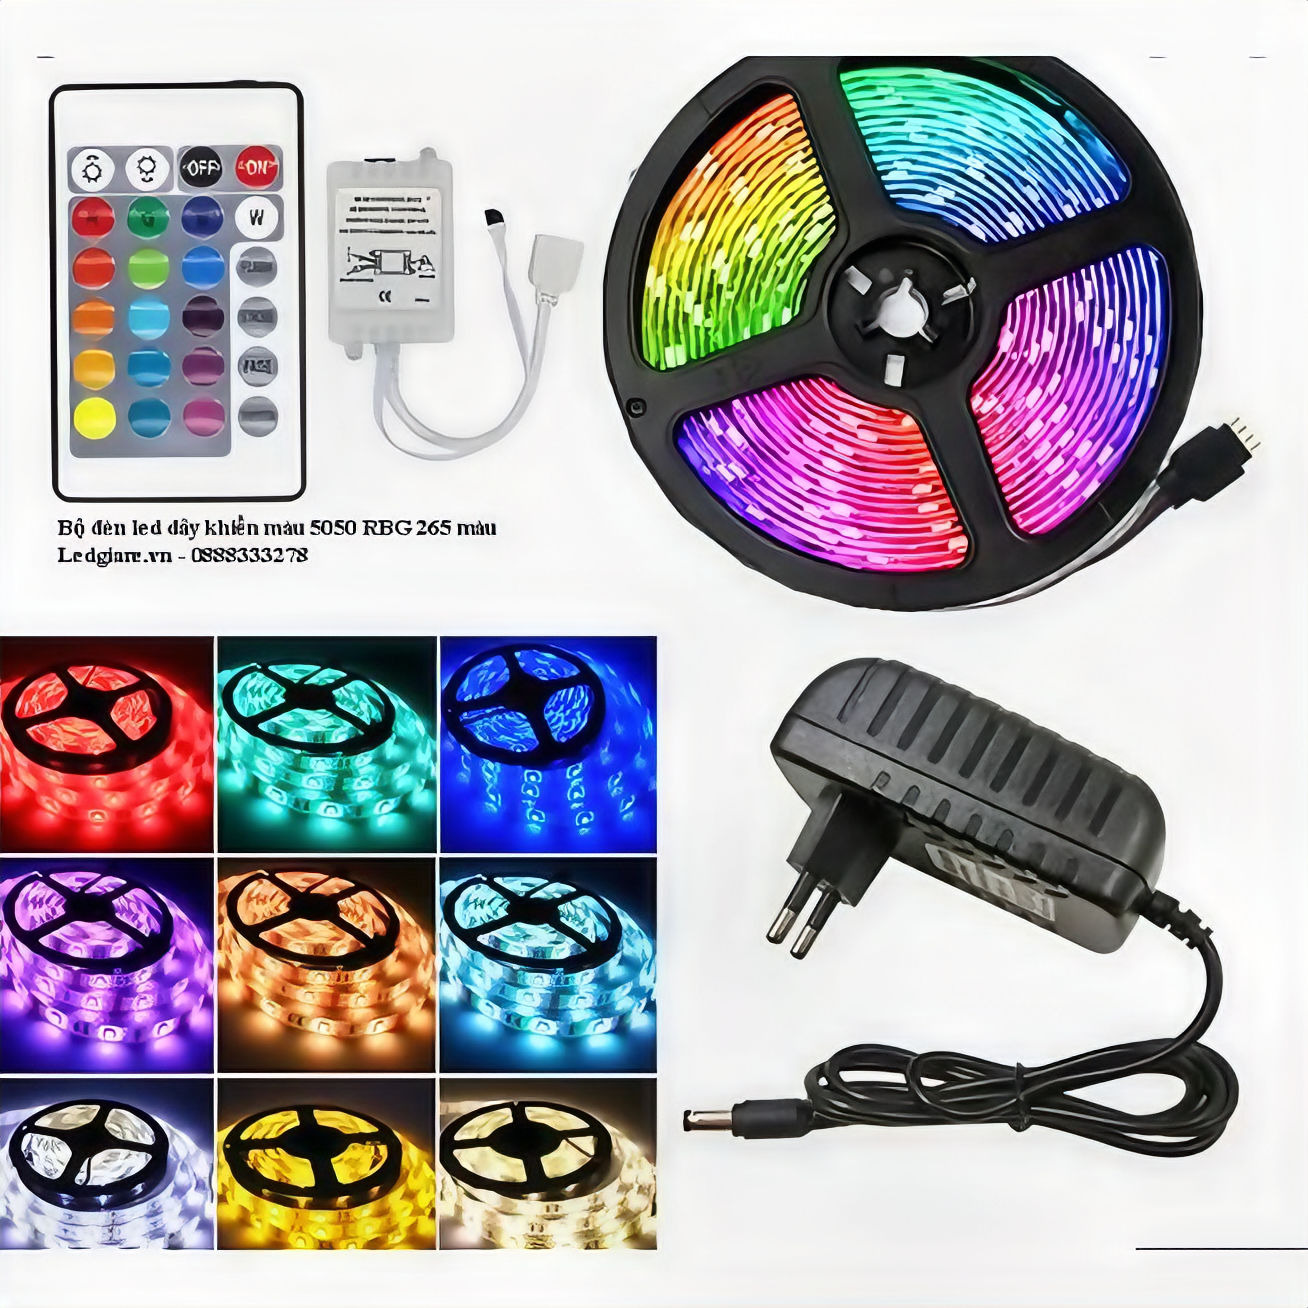 Cuộn đèn led KGRGB5050 trang trí quấn cây siêu sáng, kèm remote 44 phím dài 5m- Hàng chính hãng